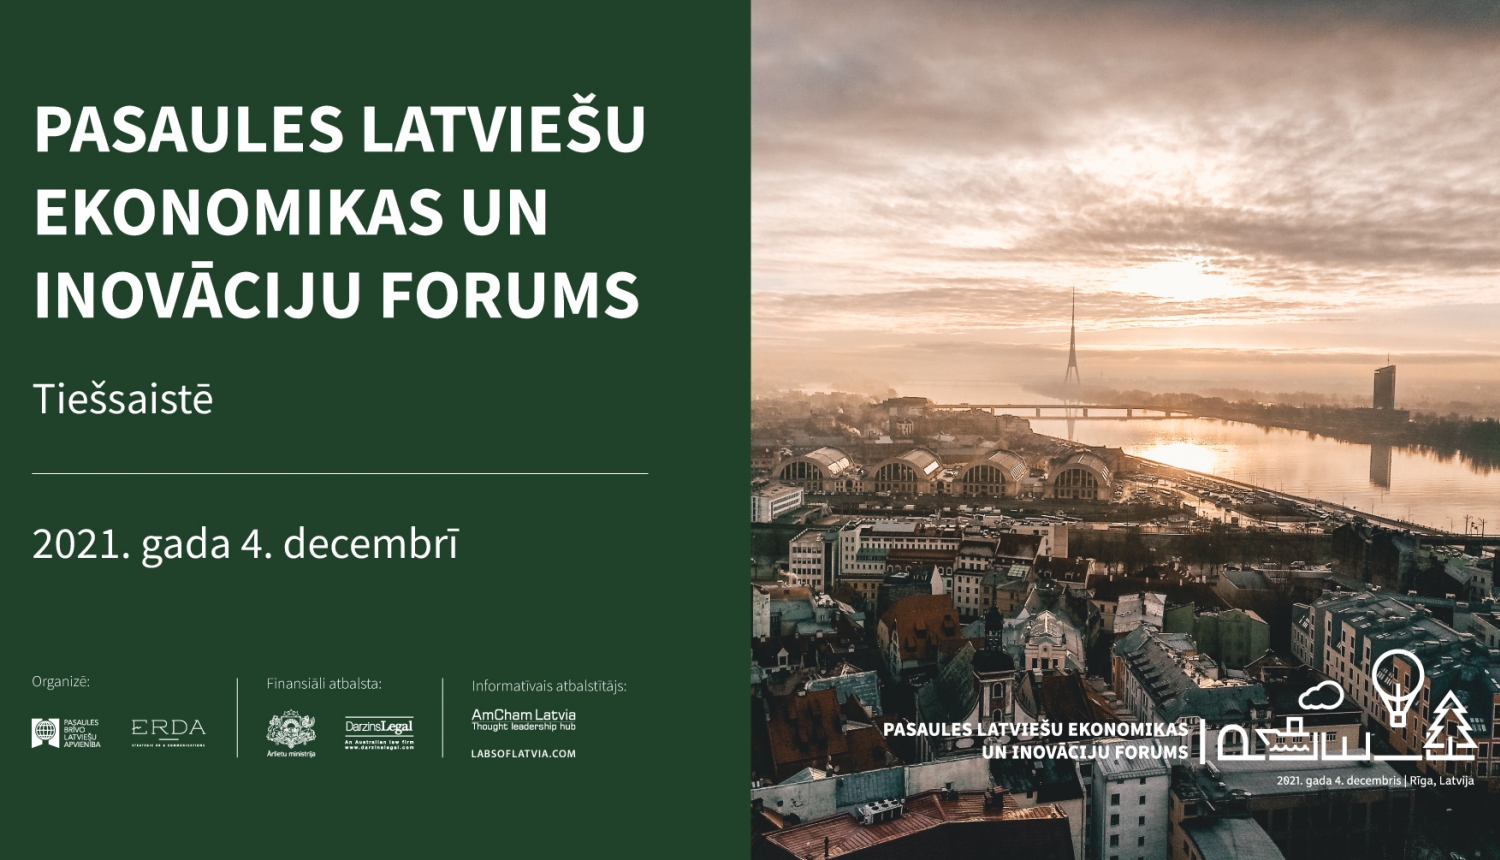 Pasaules latviešu ekonomikas un inovācijas forums